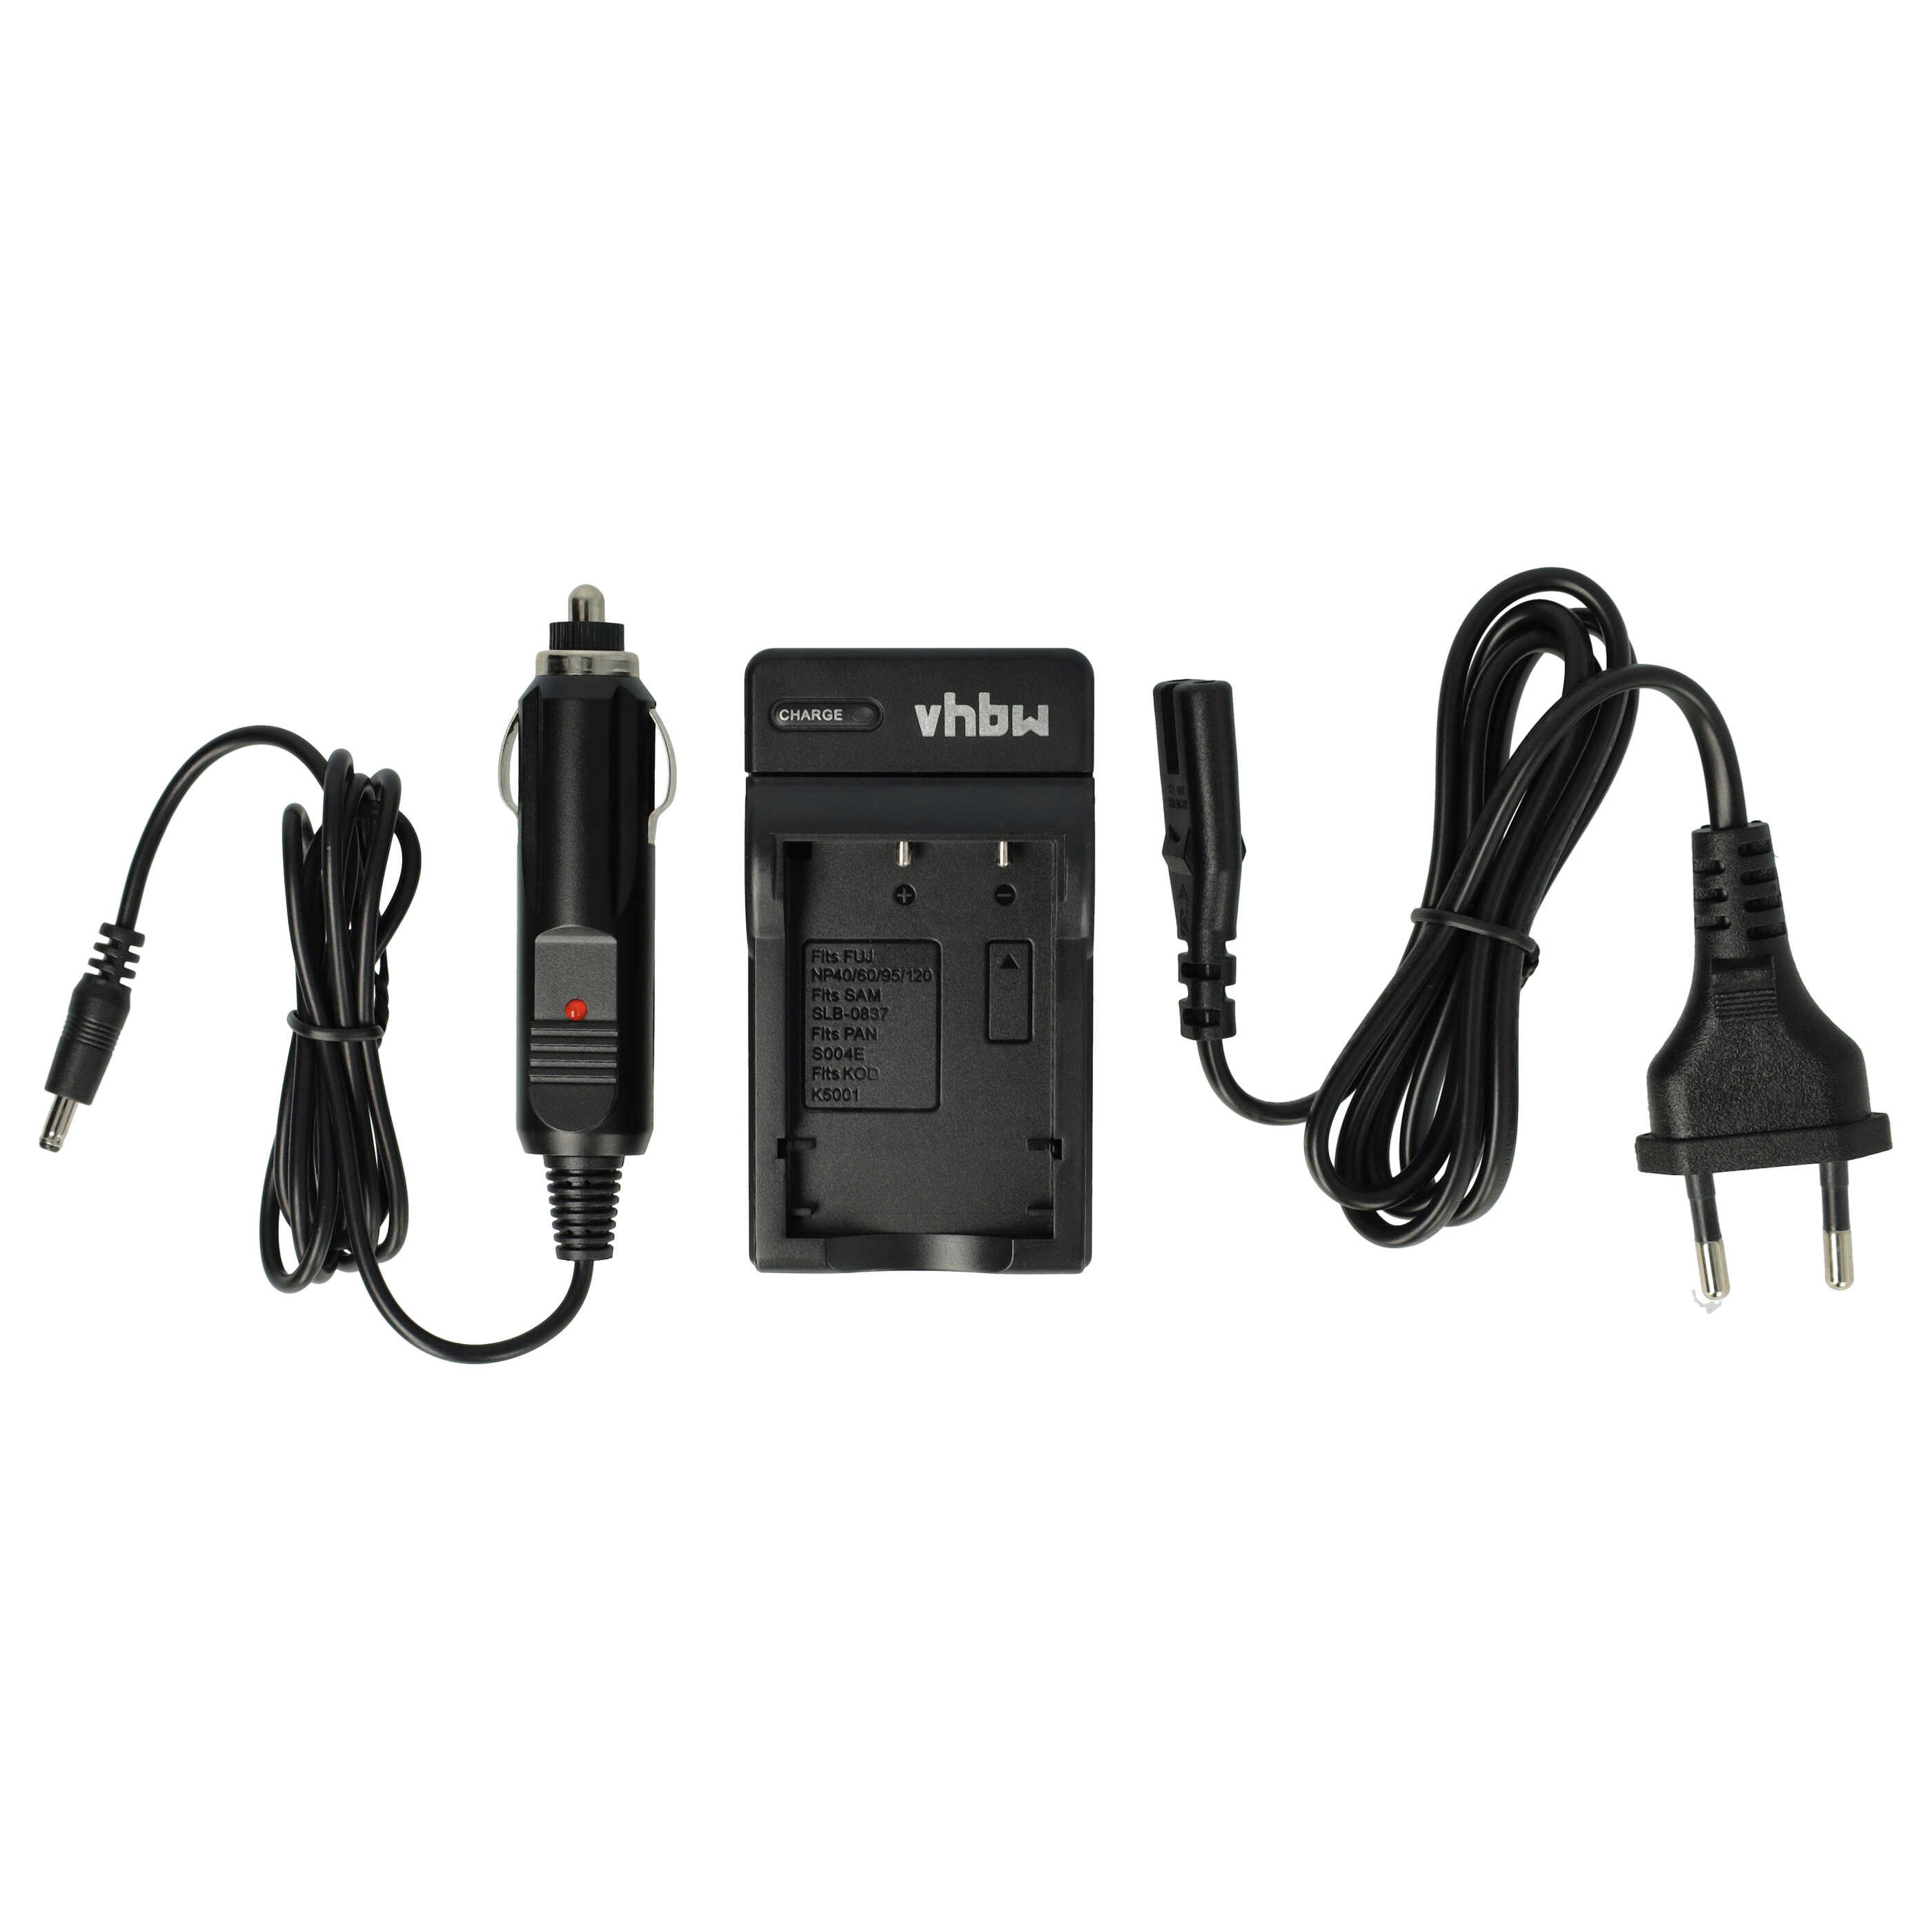 vhbw passend für Belkin F1PP000GN-SK, Wifi Skype Phone Kamera / Foto DSLR / Kamera-Ladegerät